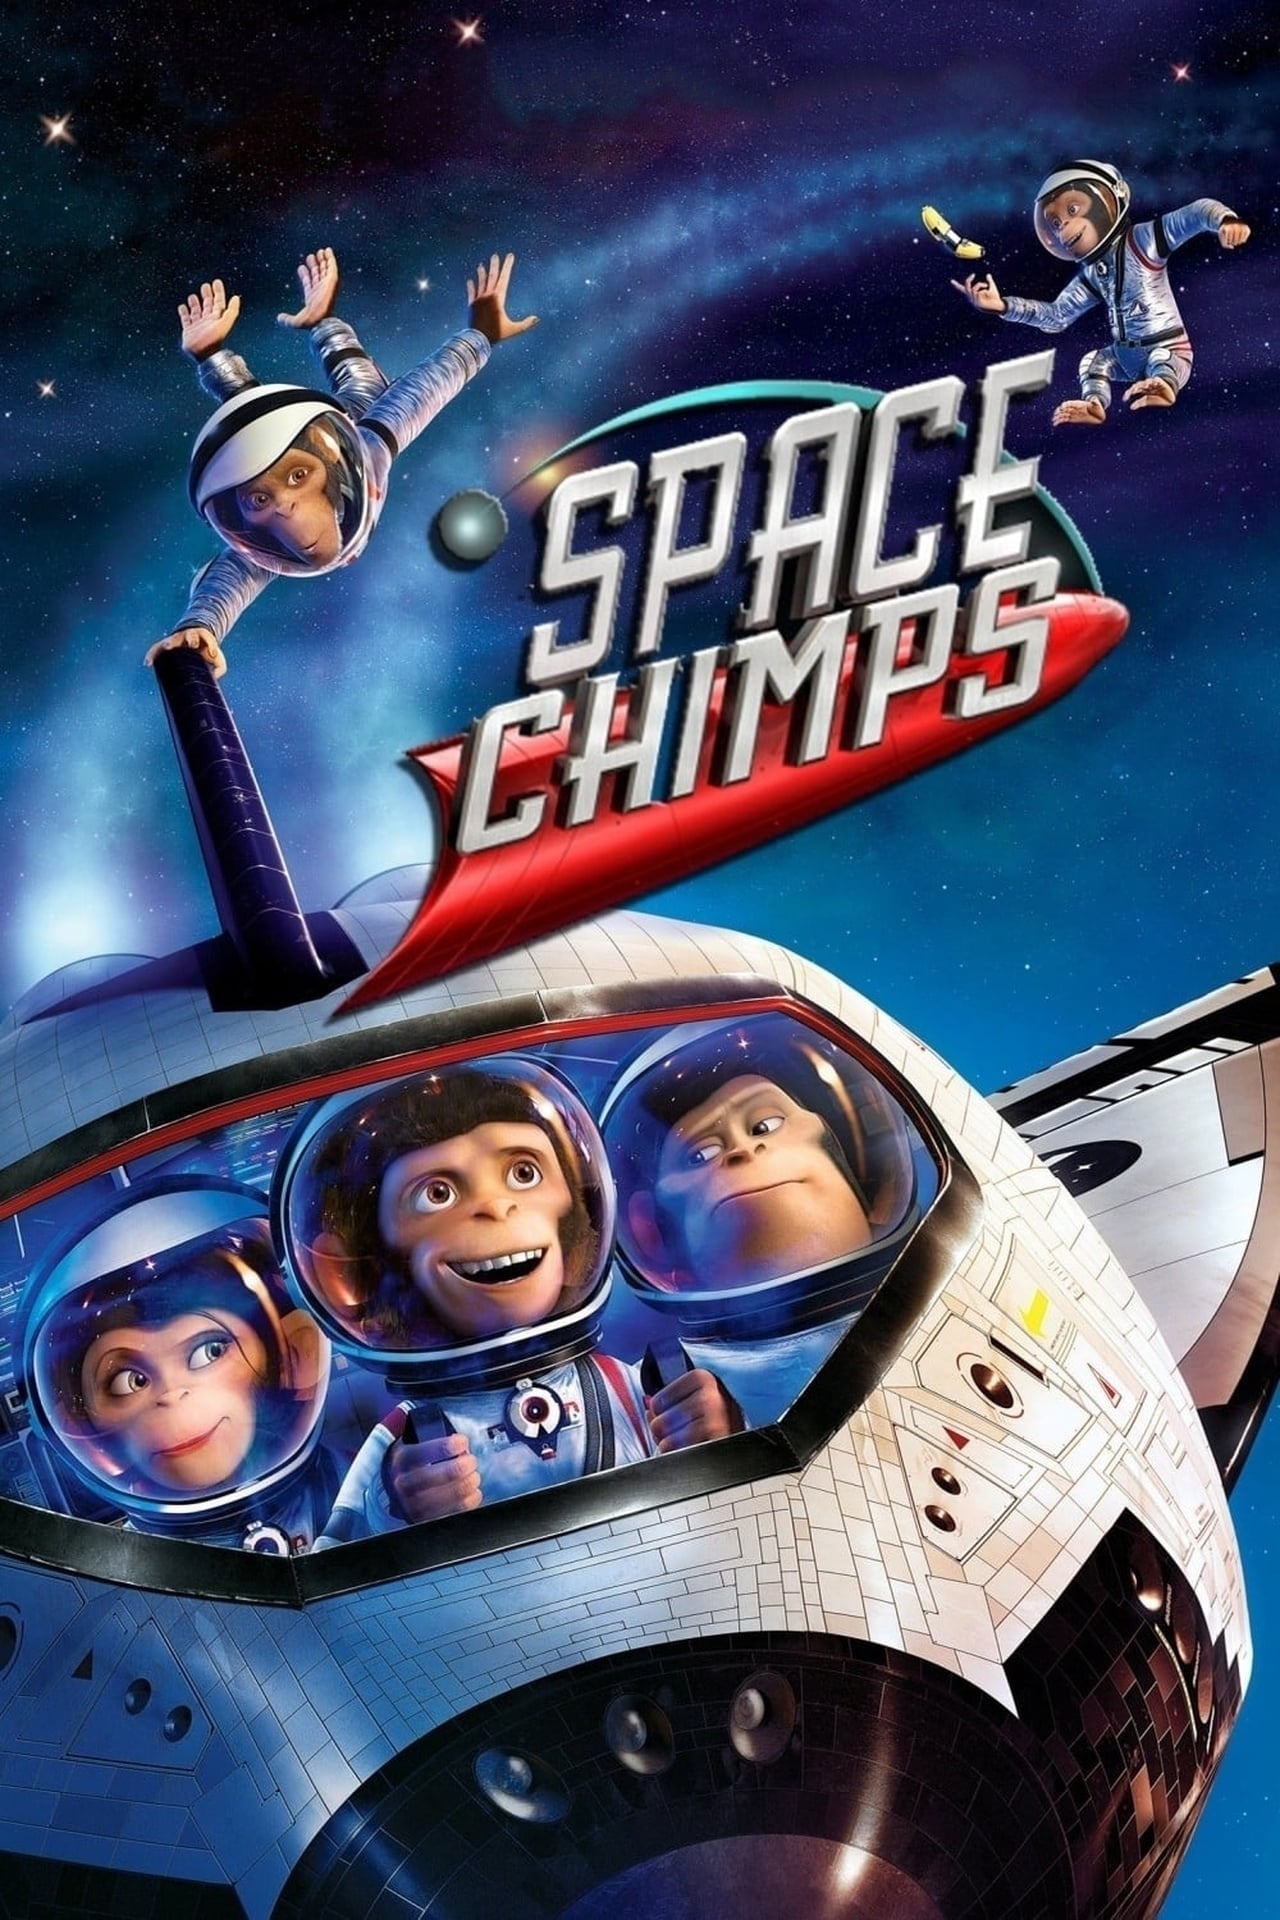 Space Chimps (Space Chimps) [2008]